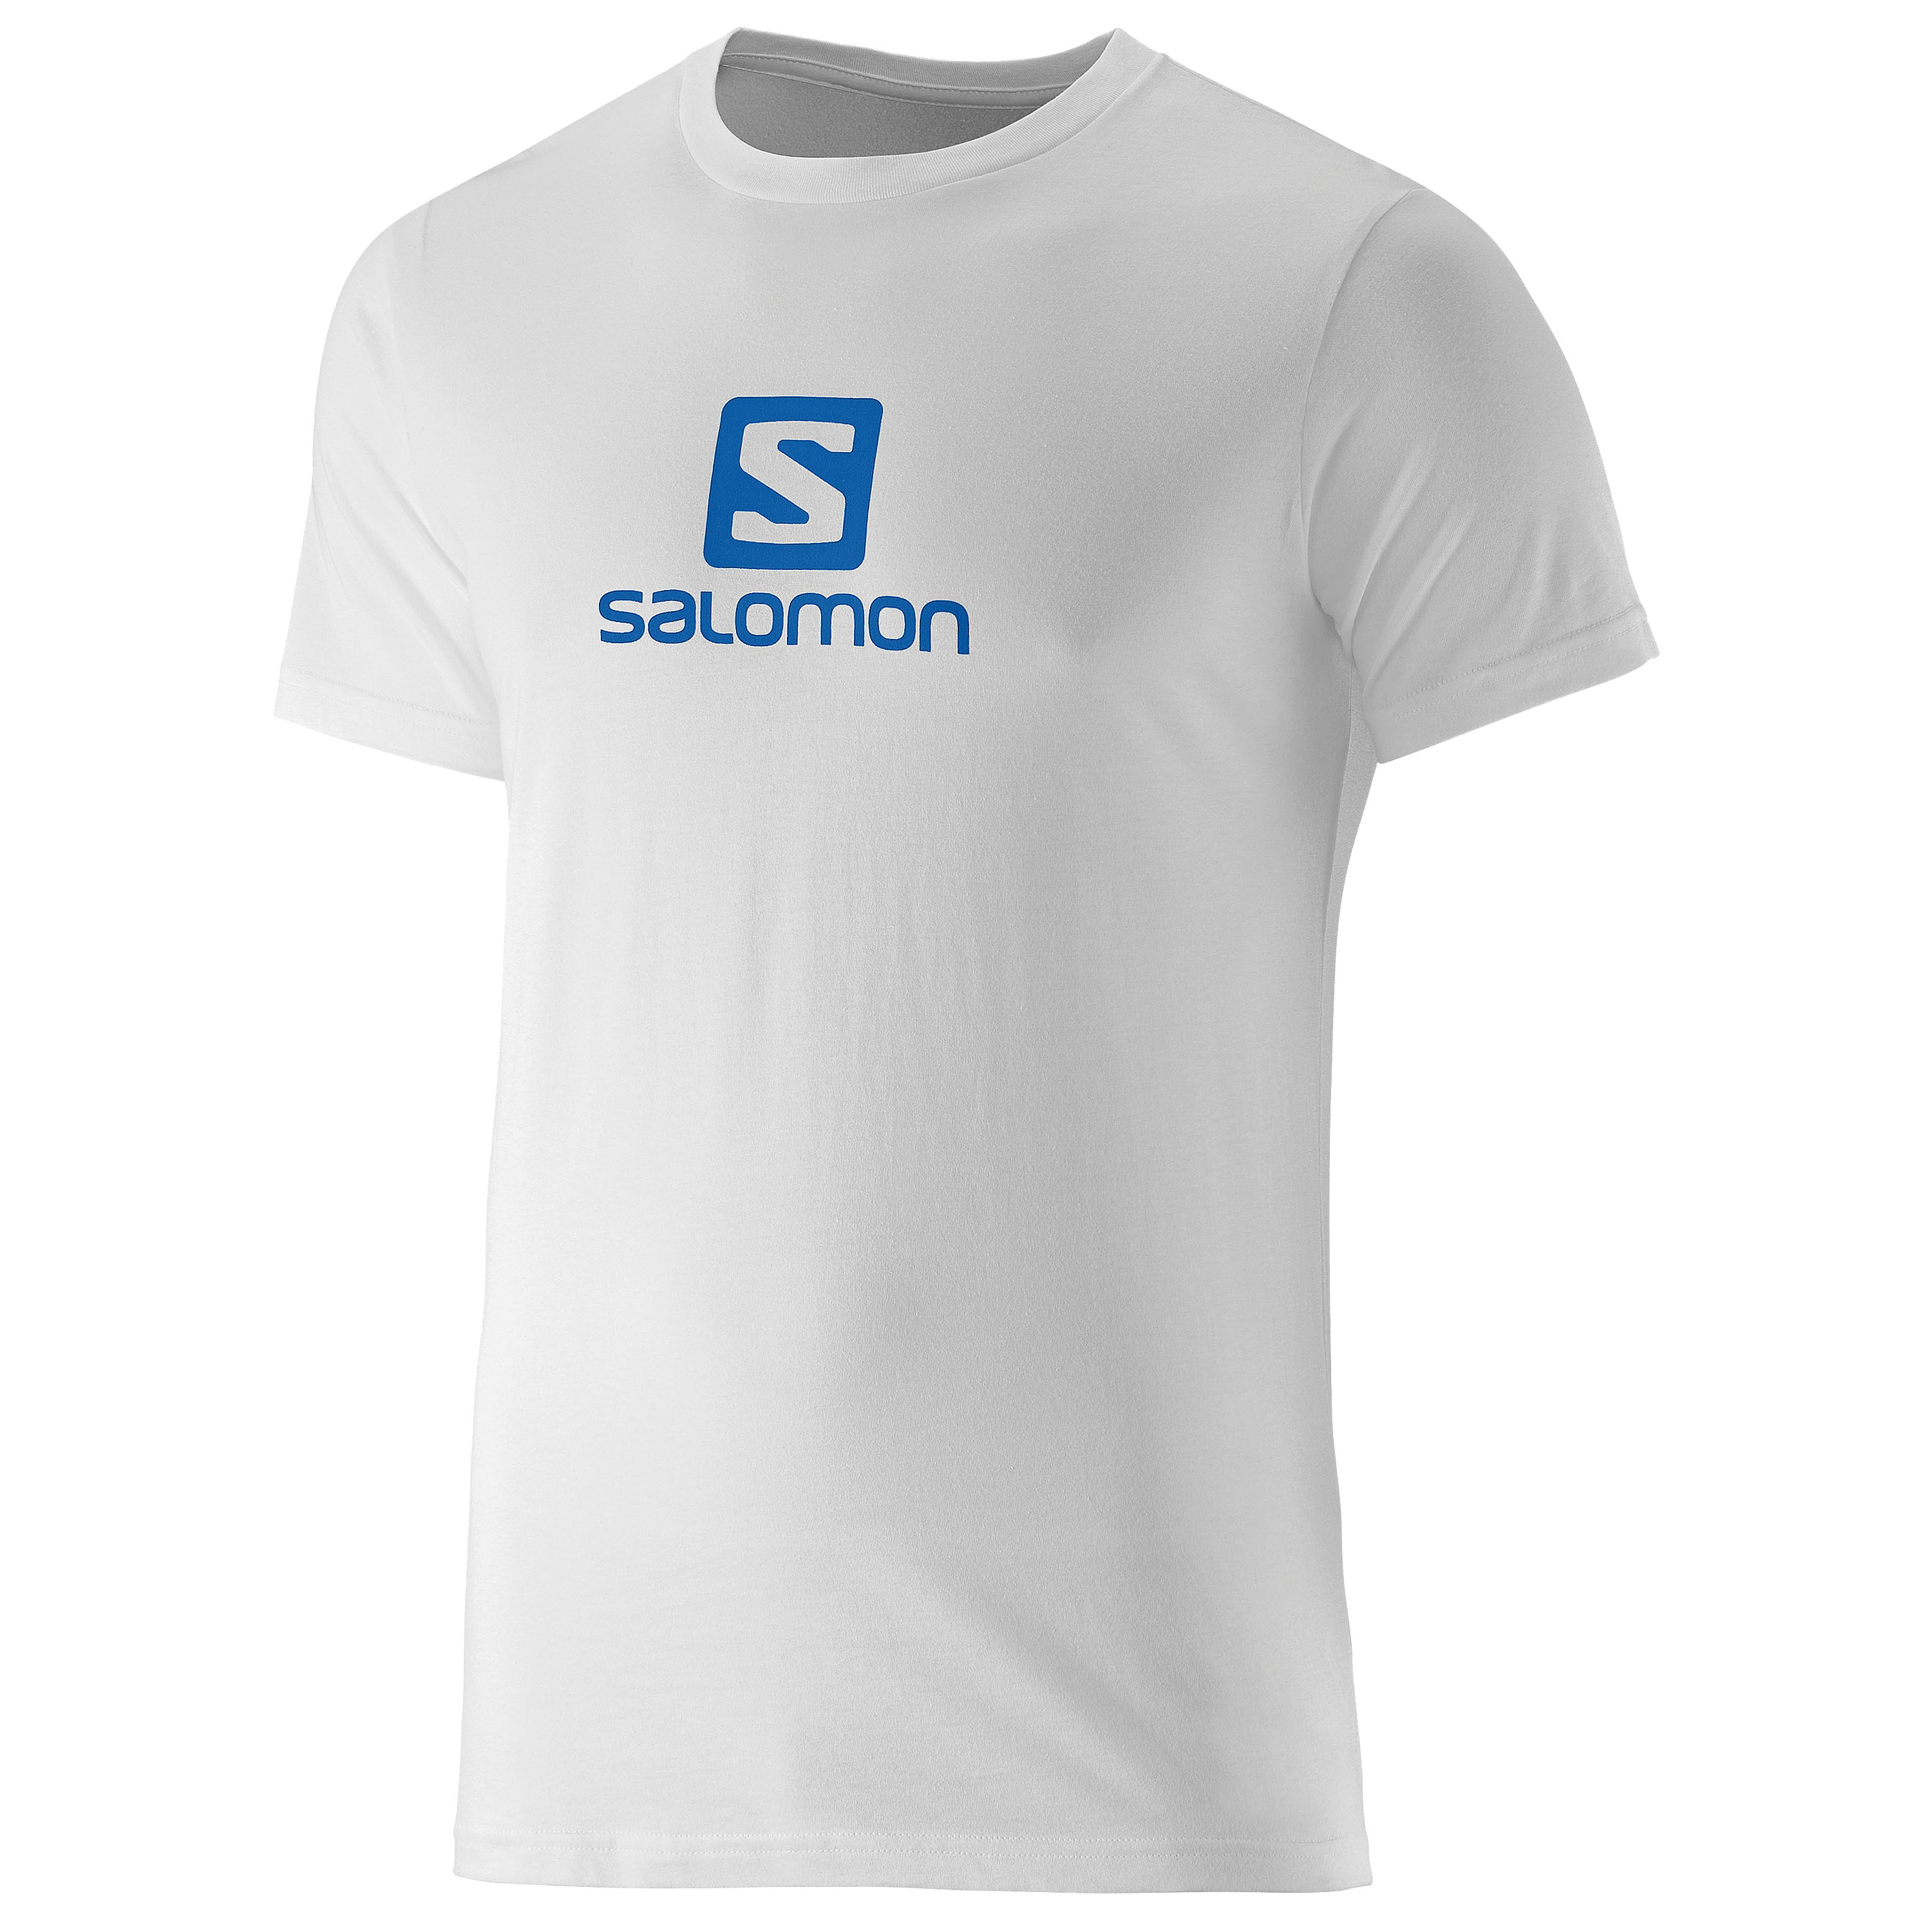 Salomon T-Shirt Cotton Tee white | Salomon T-Shirt Cotton Tee white | Shirts | Men |